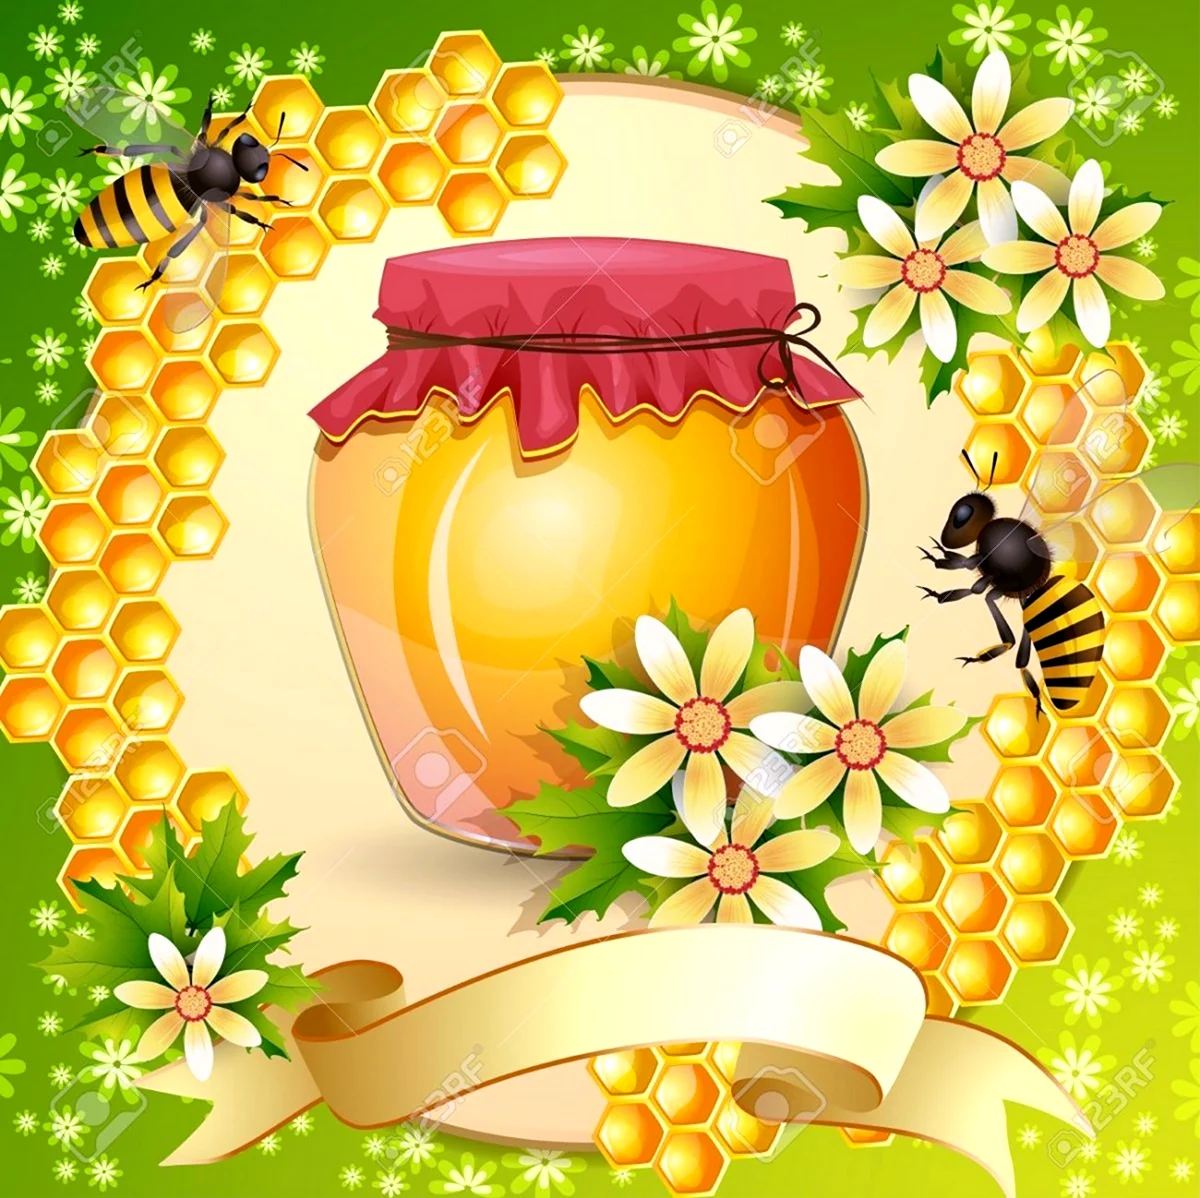 День пчеловода. Красивая картинка